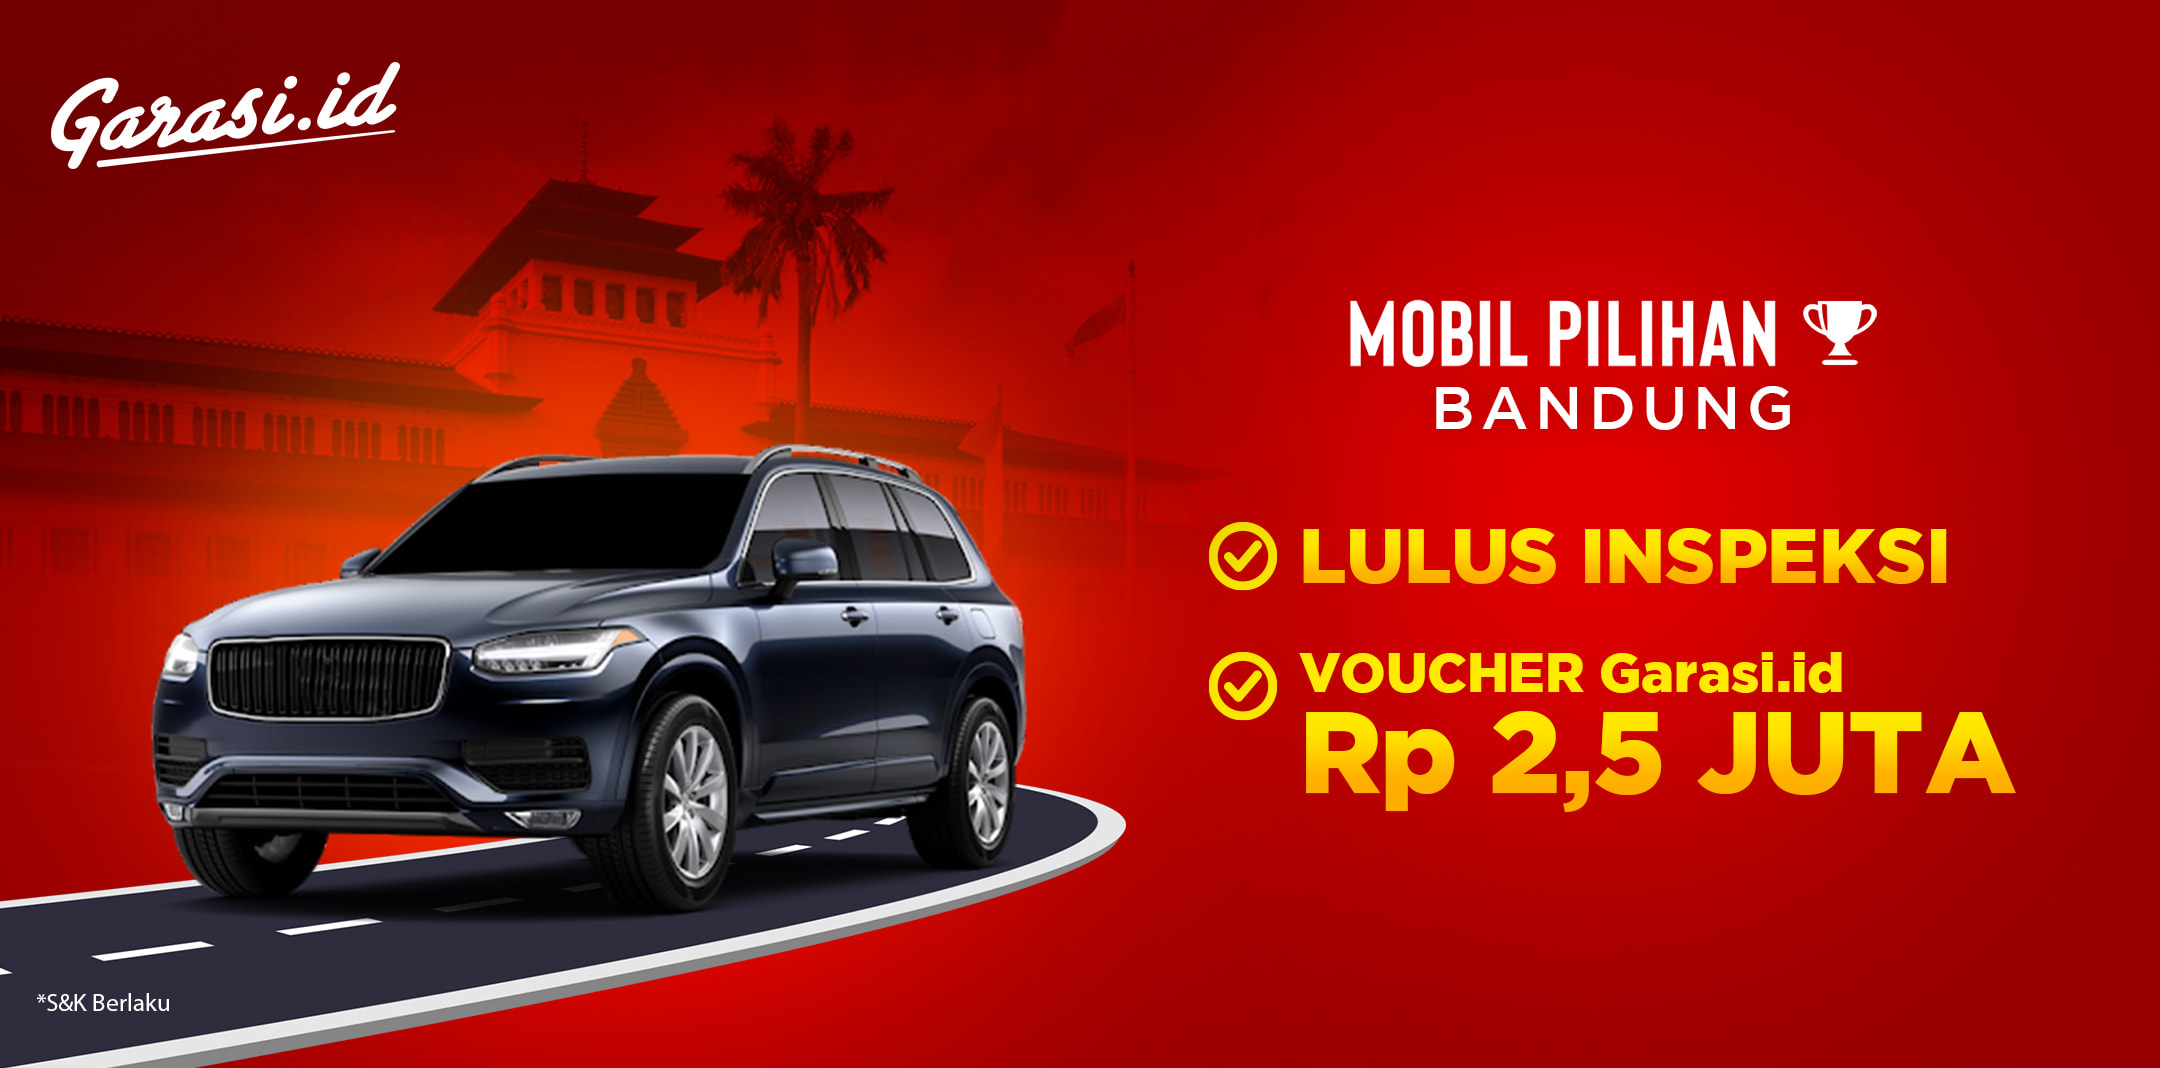 Gratis Voucher 2,5 Juta untuk pembelian Mobil Pilihan di area Bandung